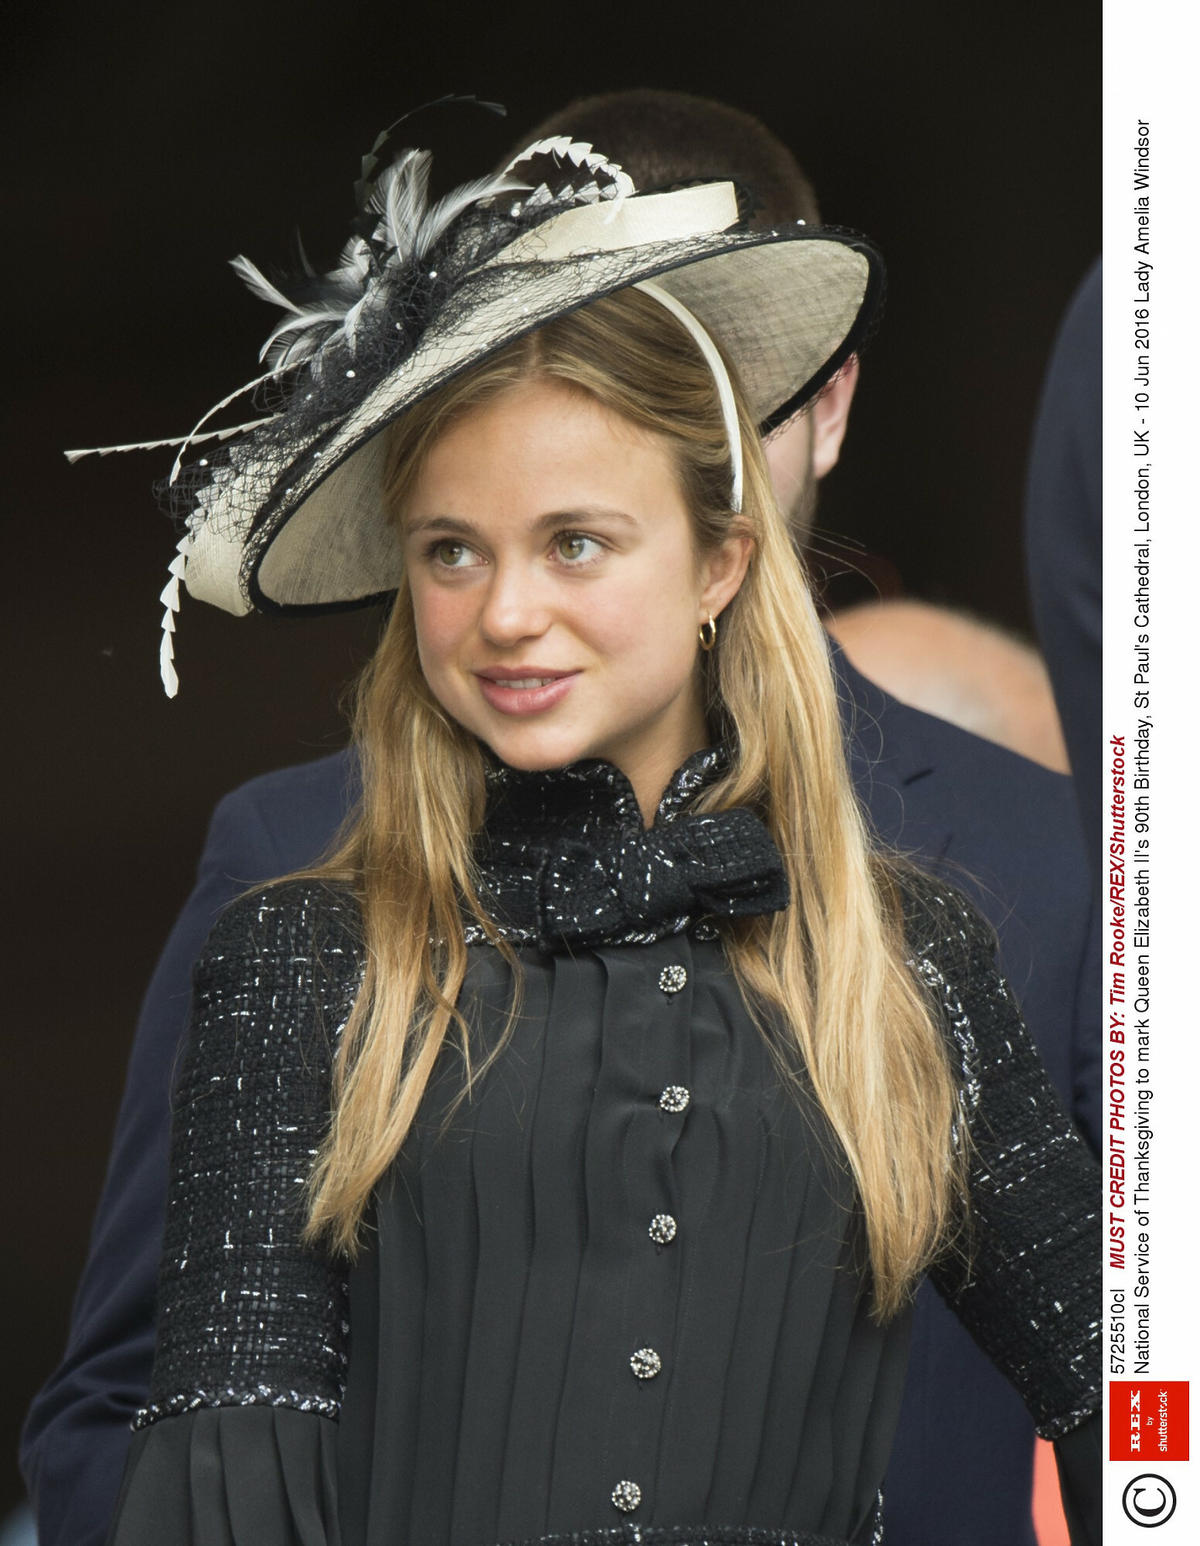 Amelia Windsor - najpiękniejsza członkini brytyjskiej rodziny królewskiej - podczas oficjalnego wyjścia